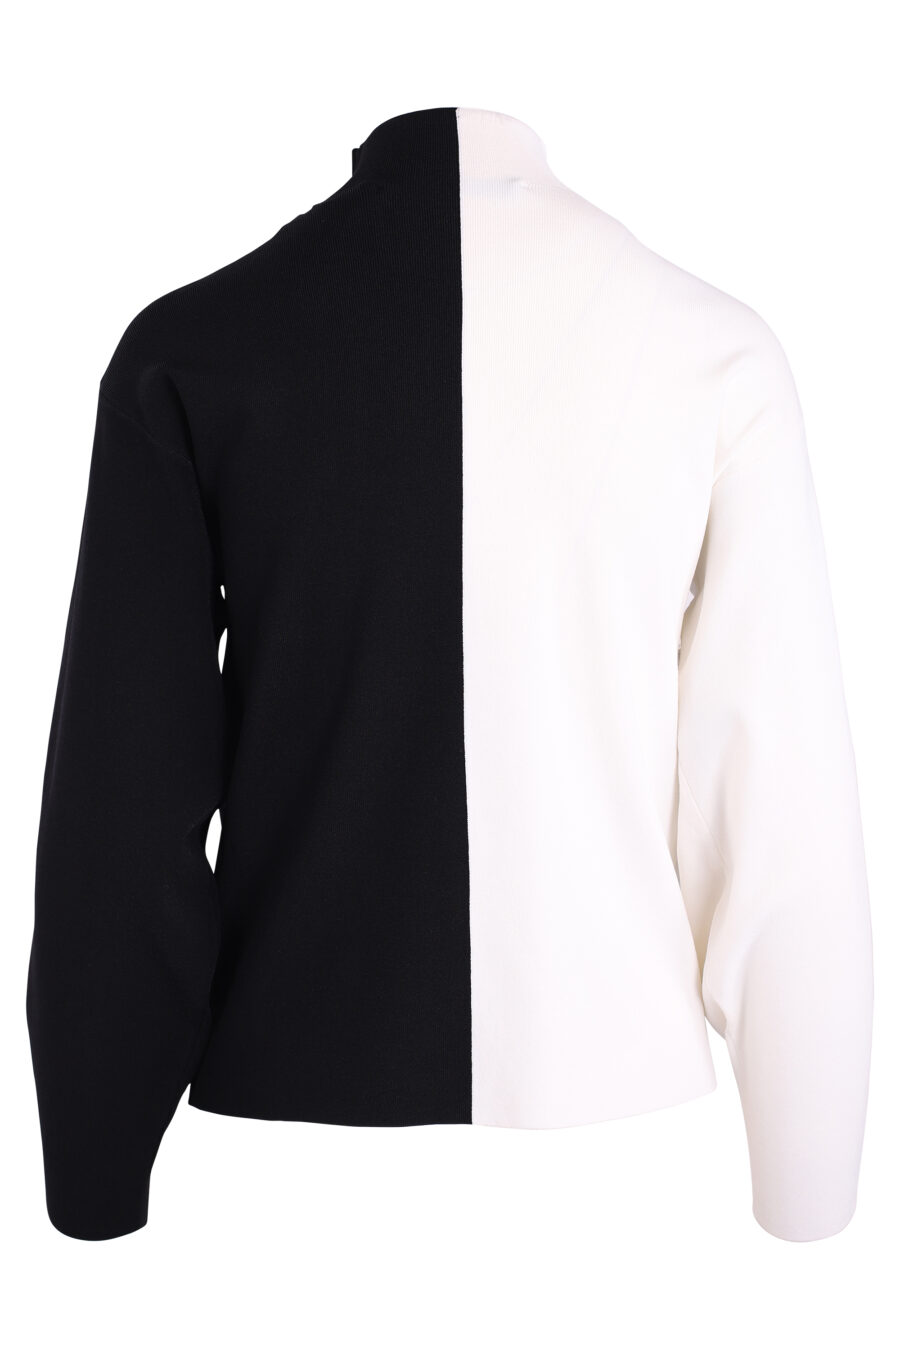 Jersey bicolor blanca y negra con maxilogo - IMG 3380